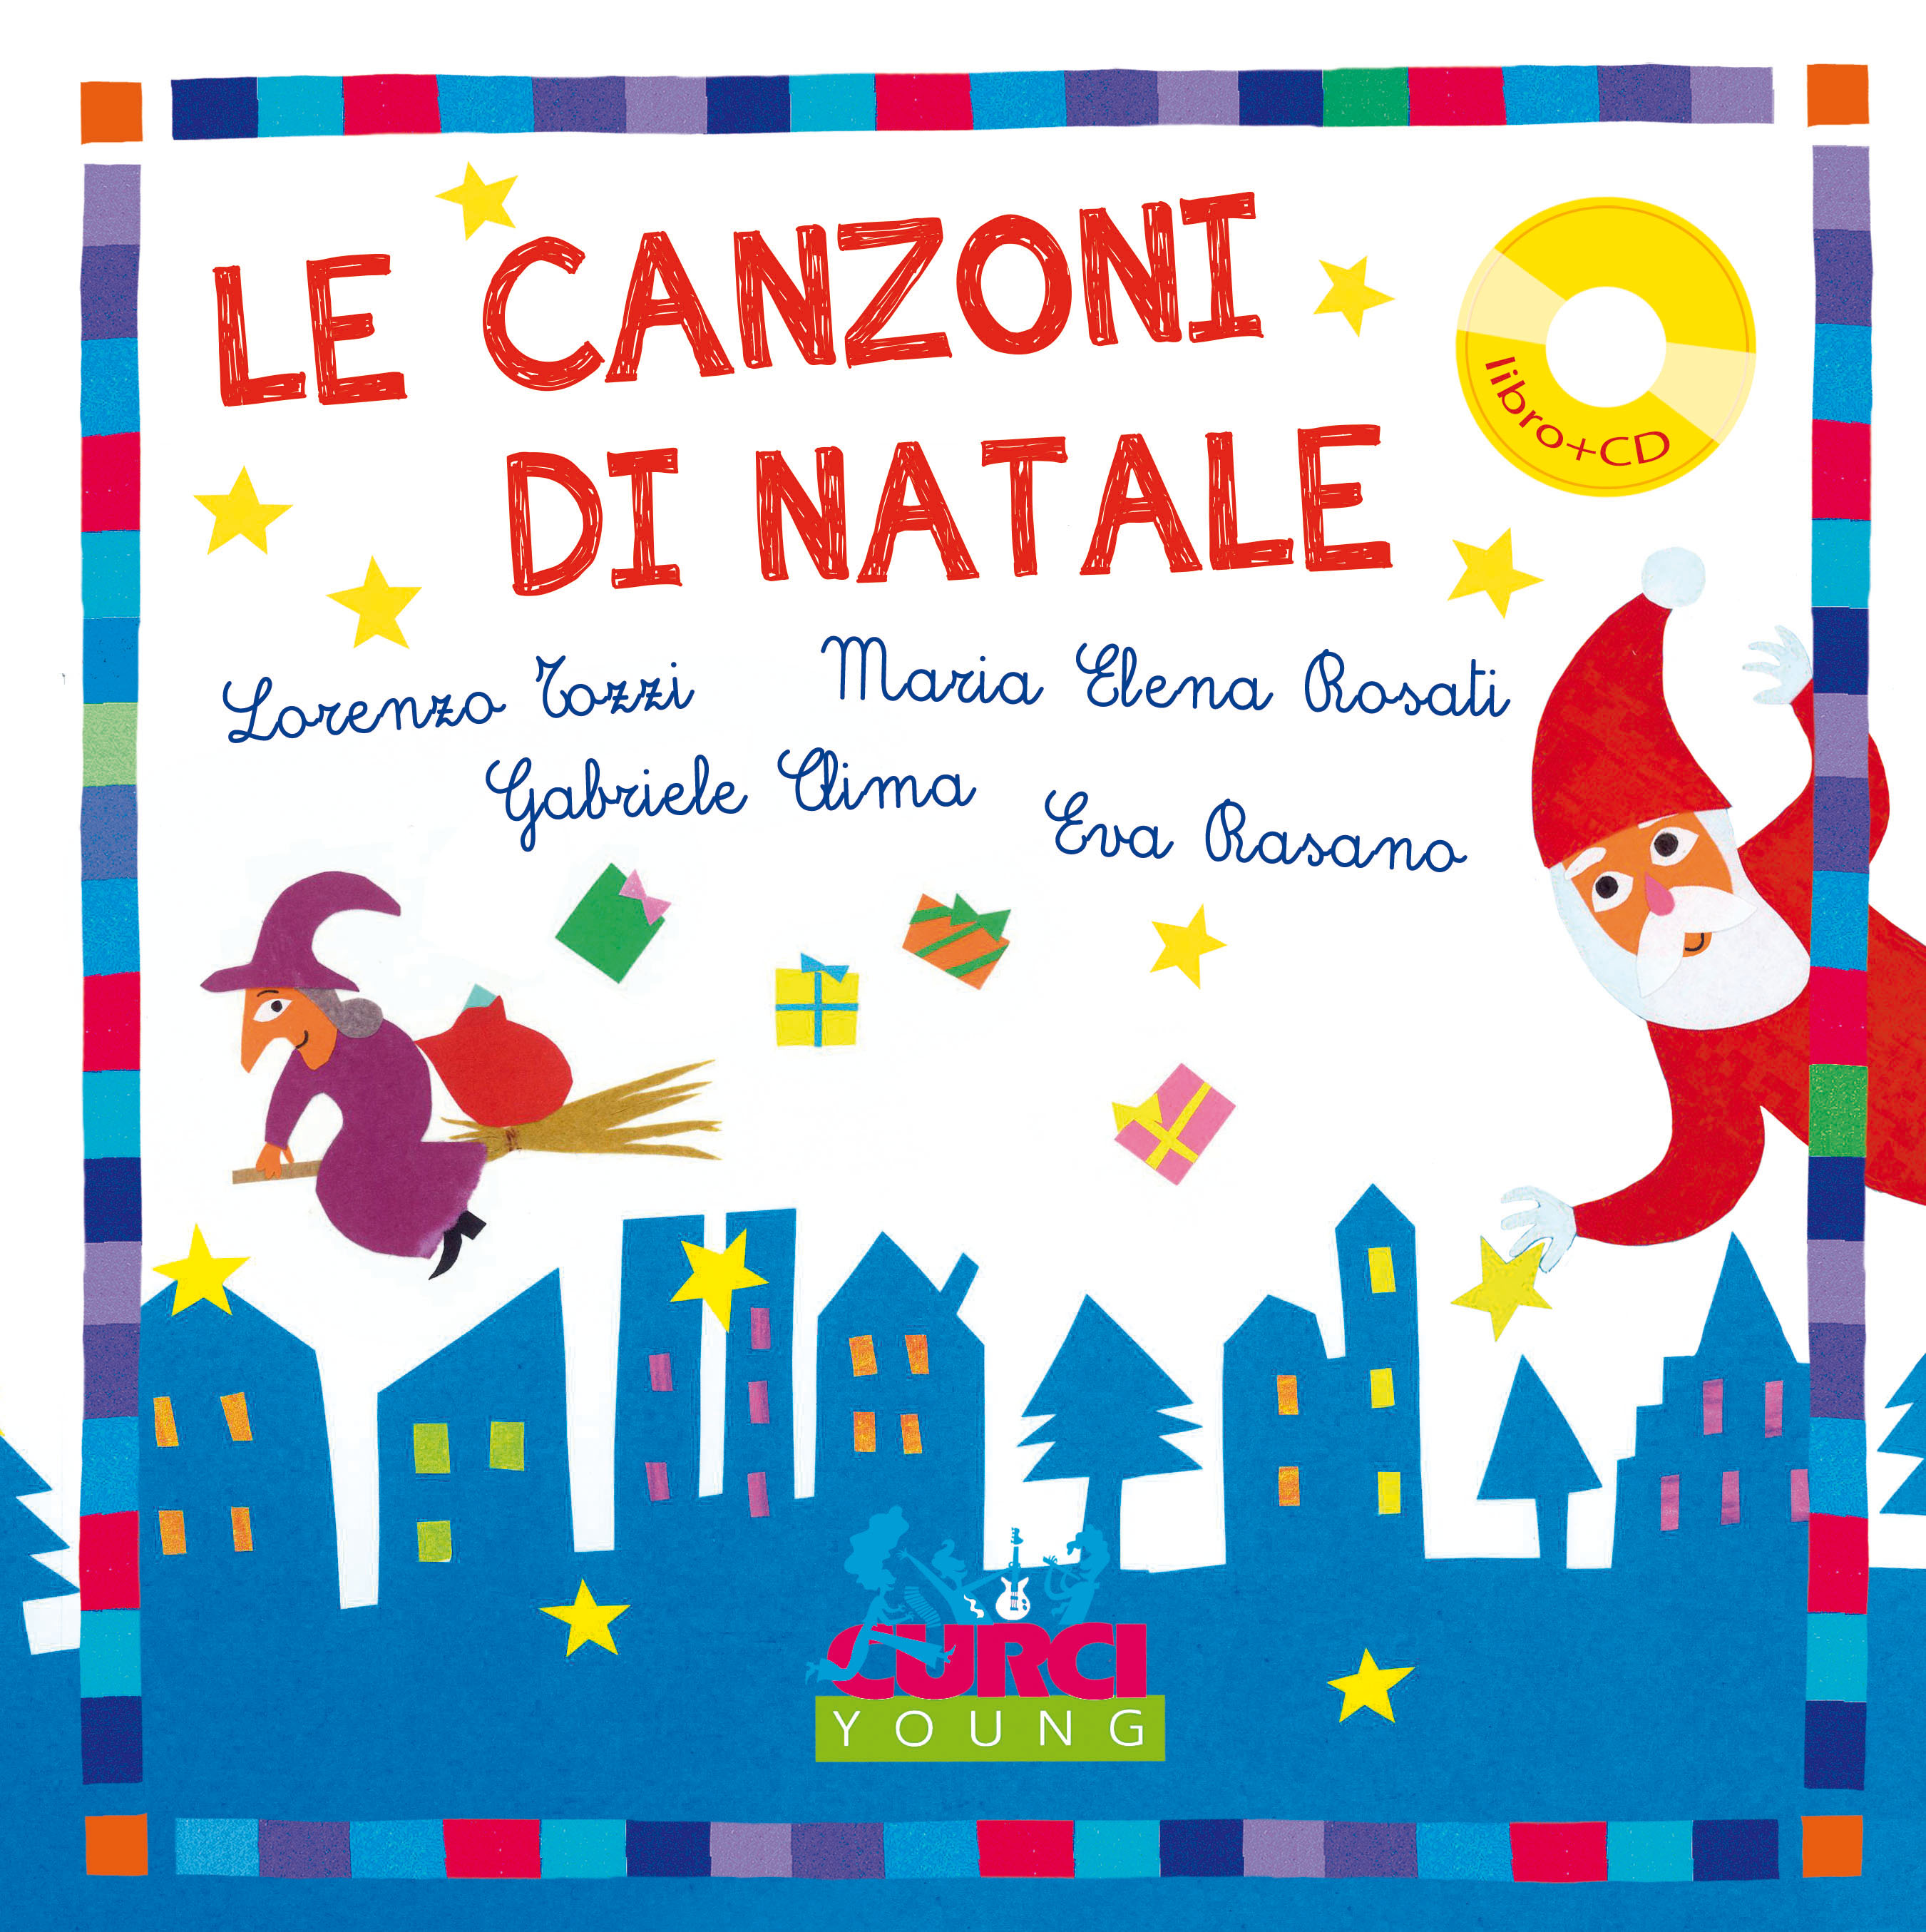 Canzoni Natale.Le Canzoni Di Natale Edizioni Curci Catalogo 011947ec